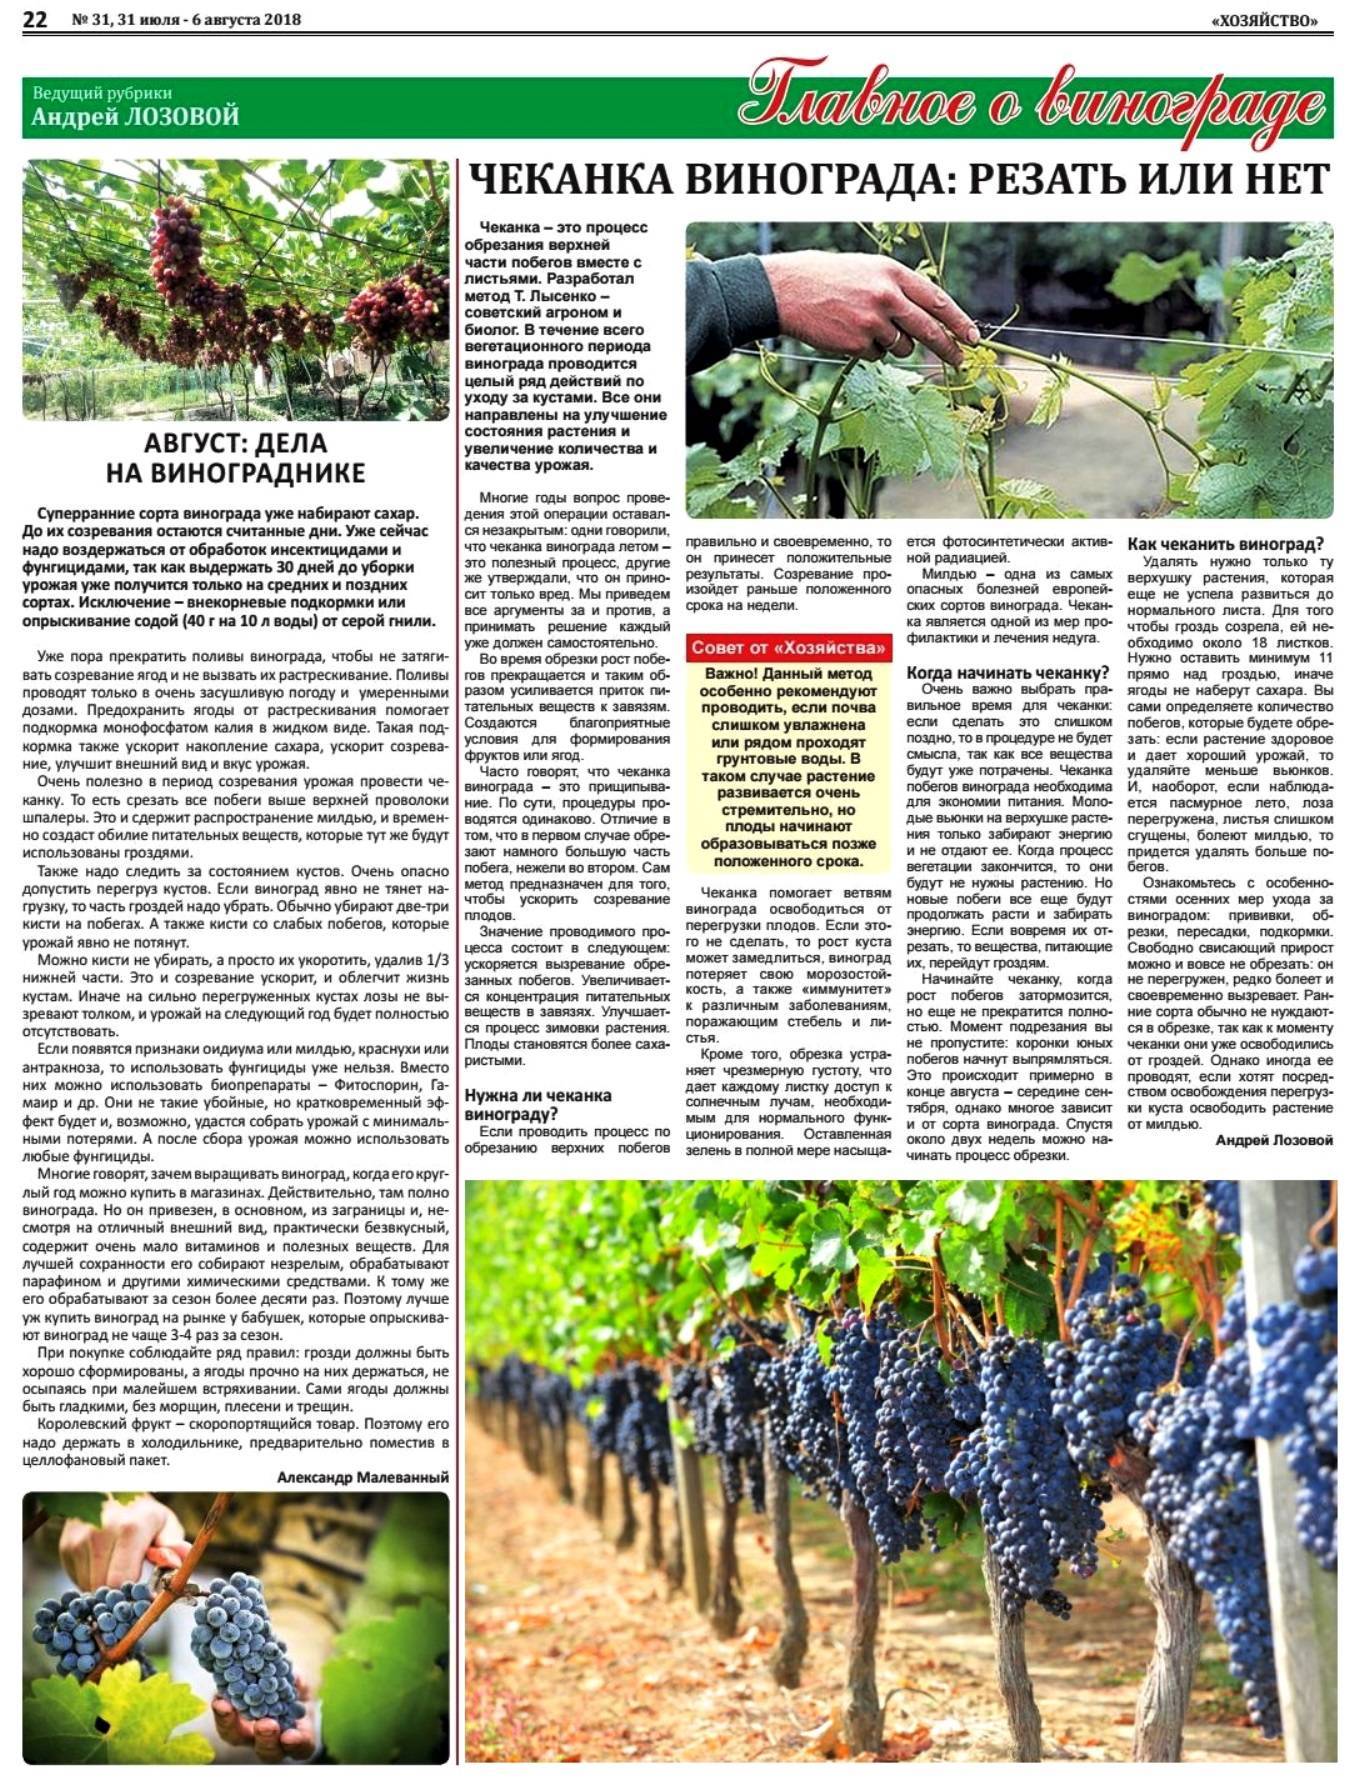 Виноград лидия – описание сорта, фото, отзывы виноградарей, плюсы и минусы ягод